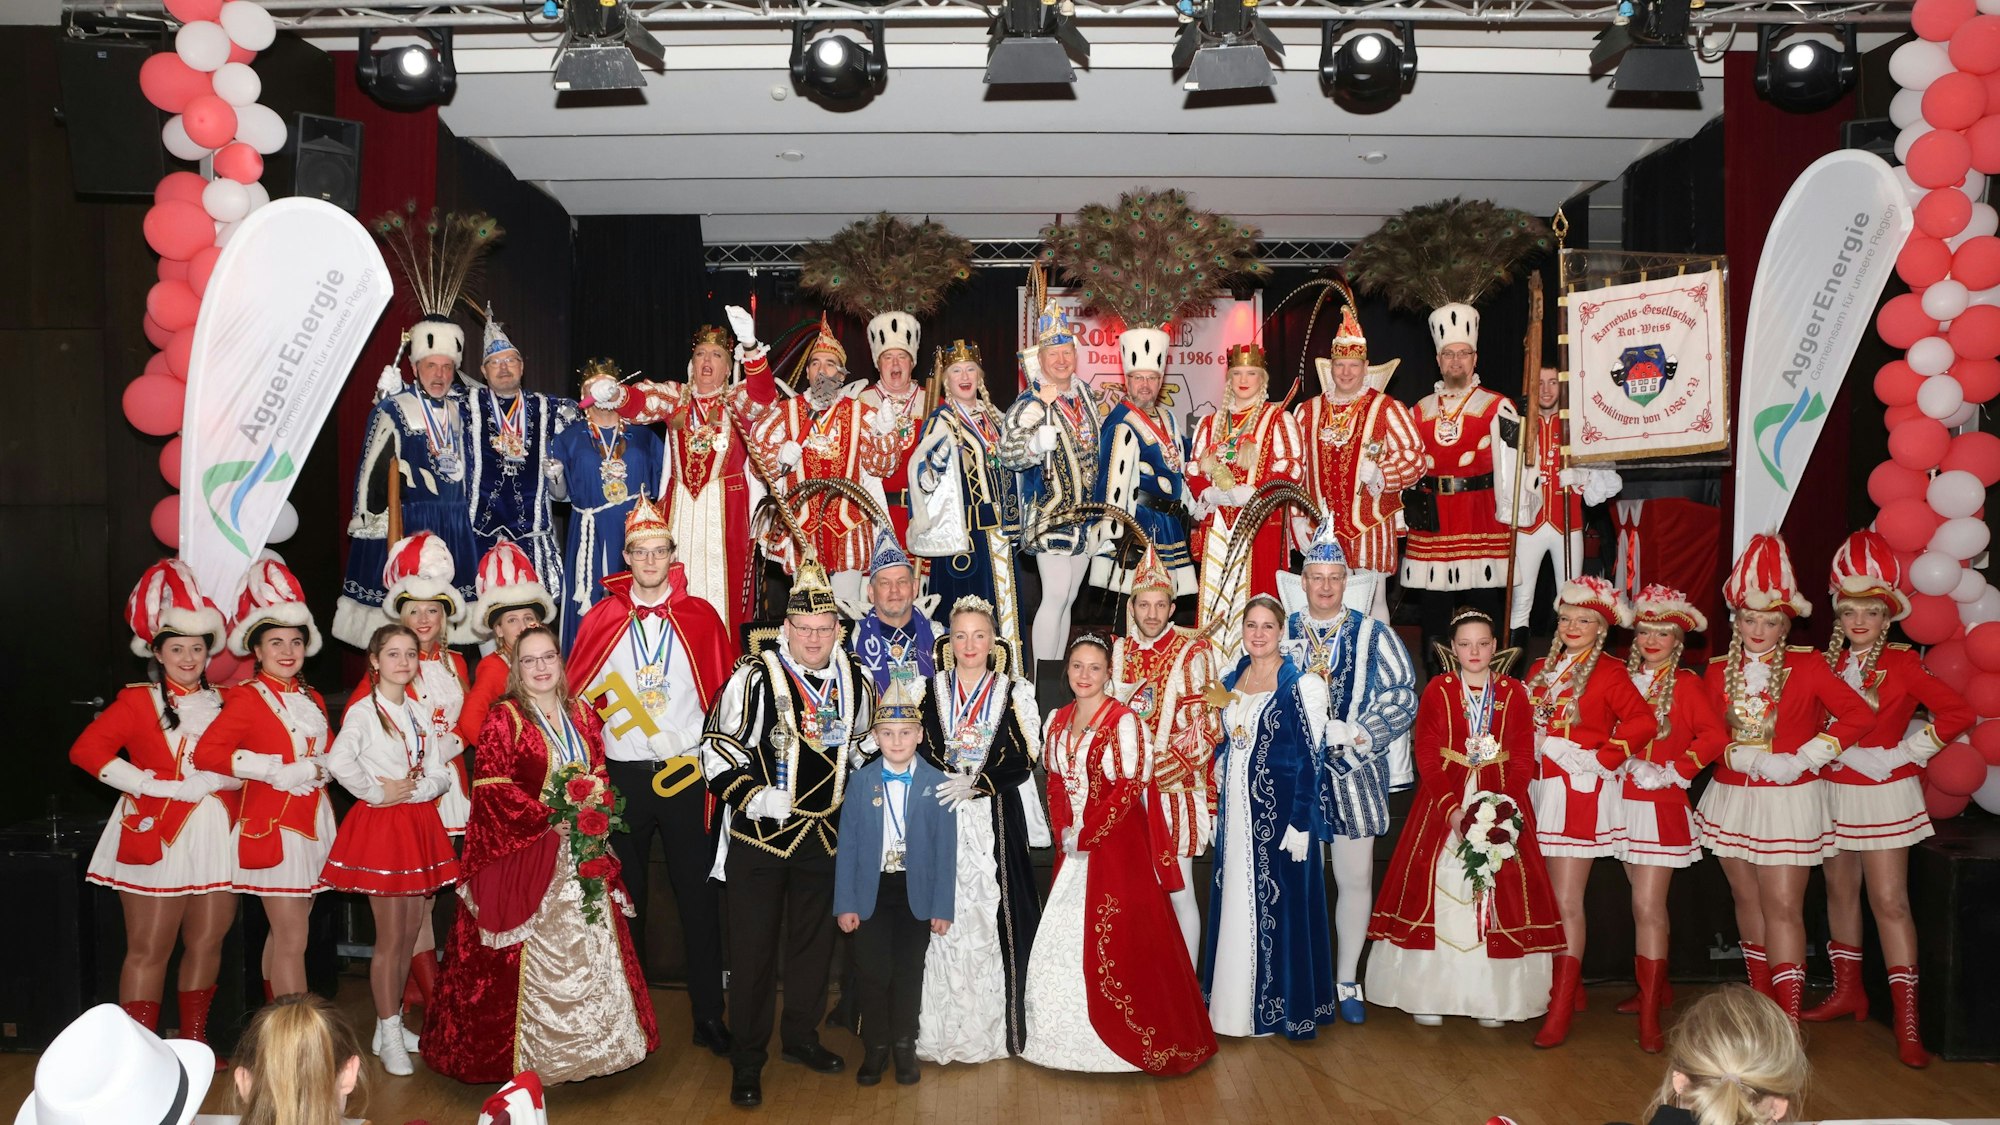 Gruppenfoto der Tollitäten von 15 Karnevalsvereinen.